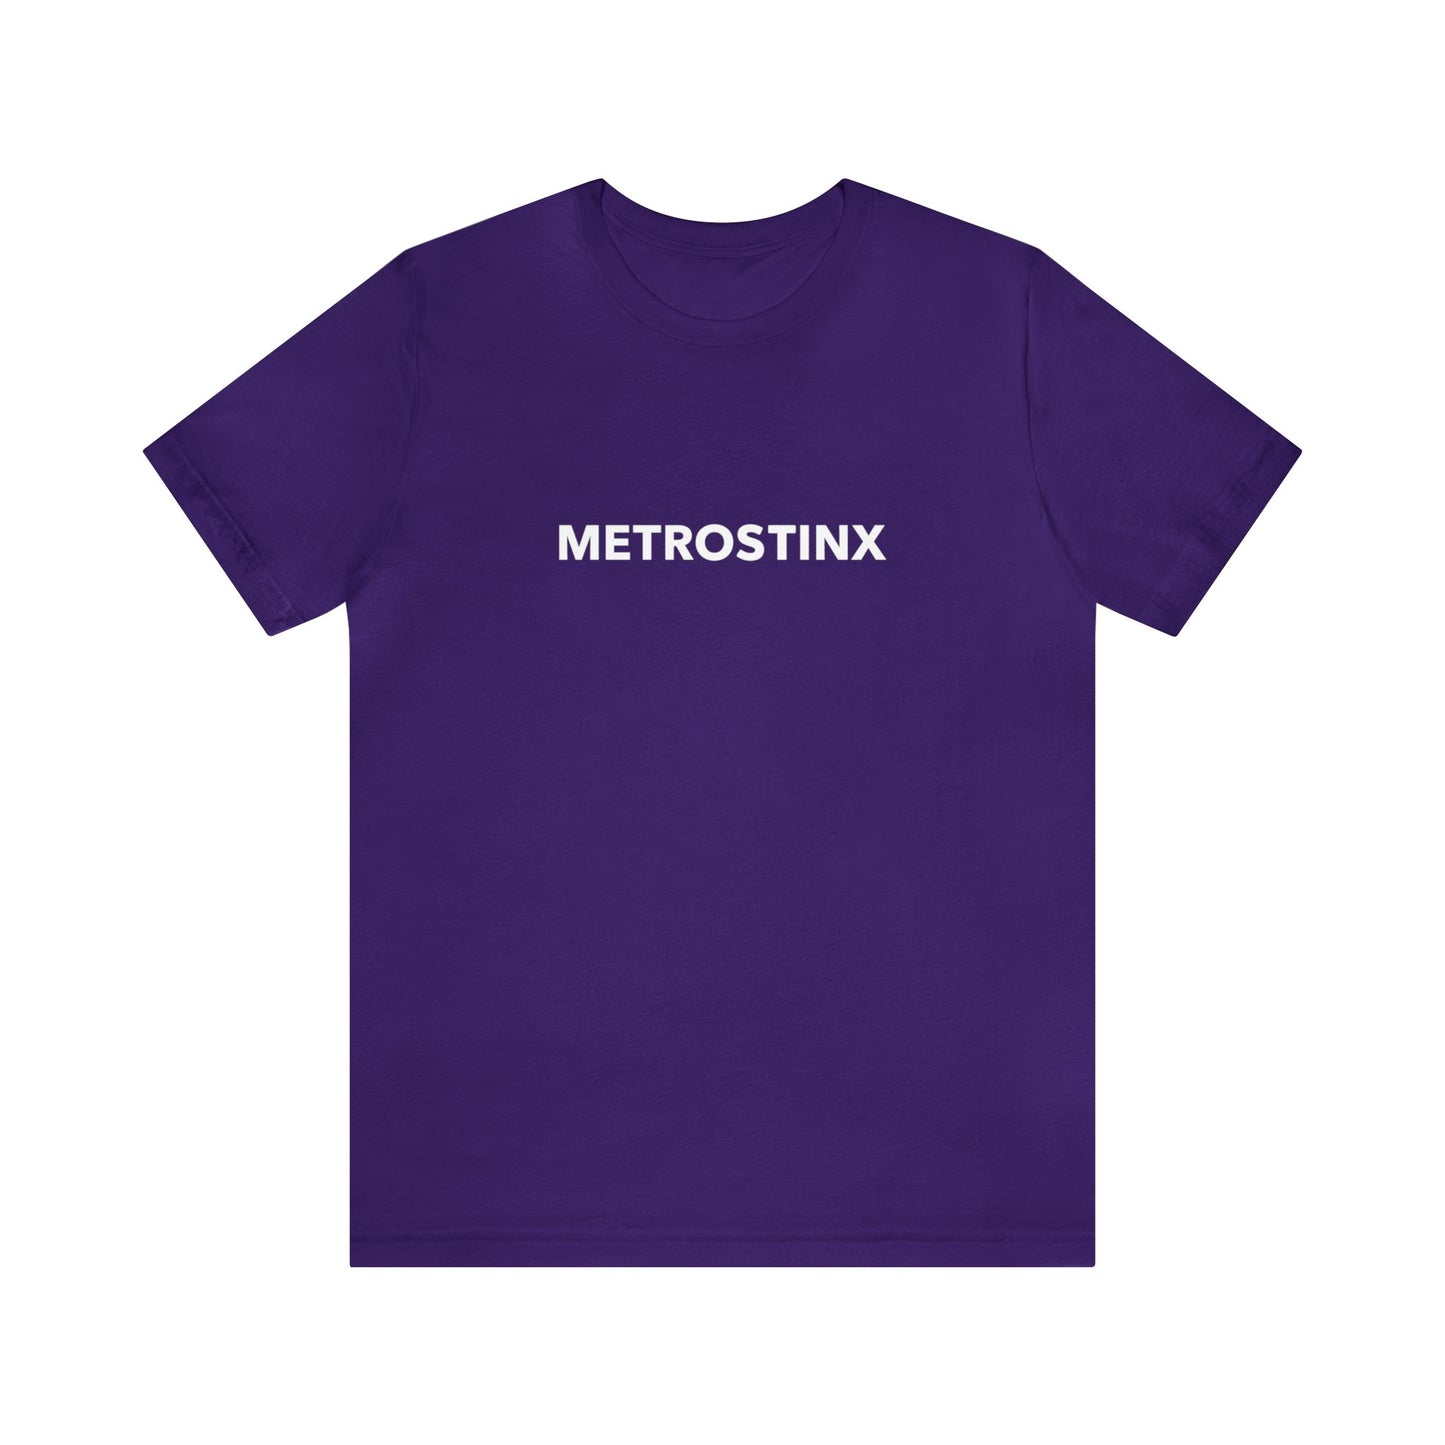 Metrostinx Tee